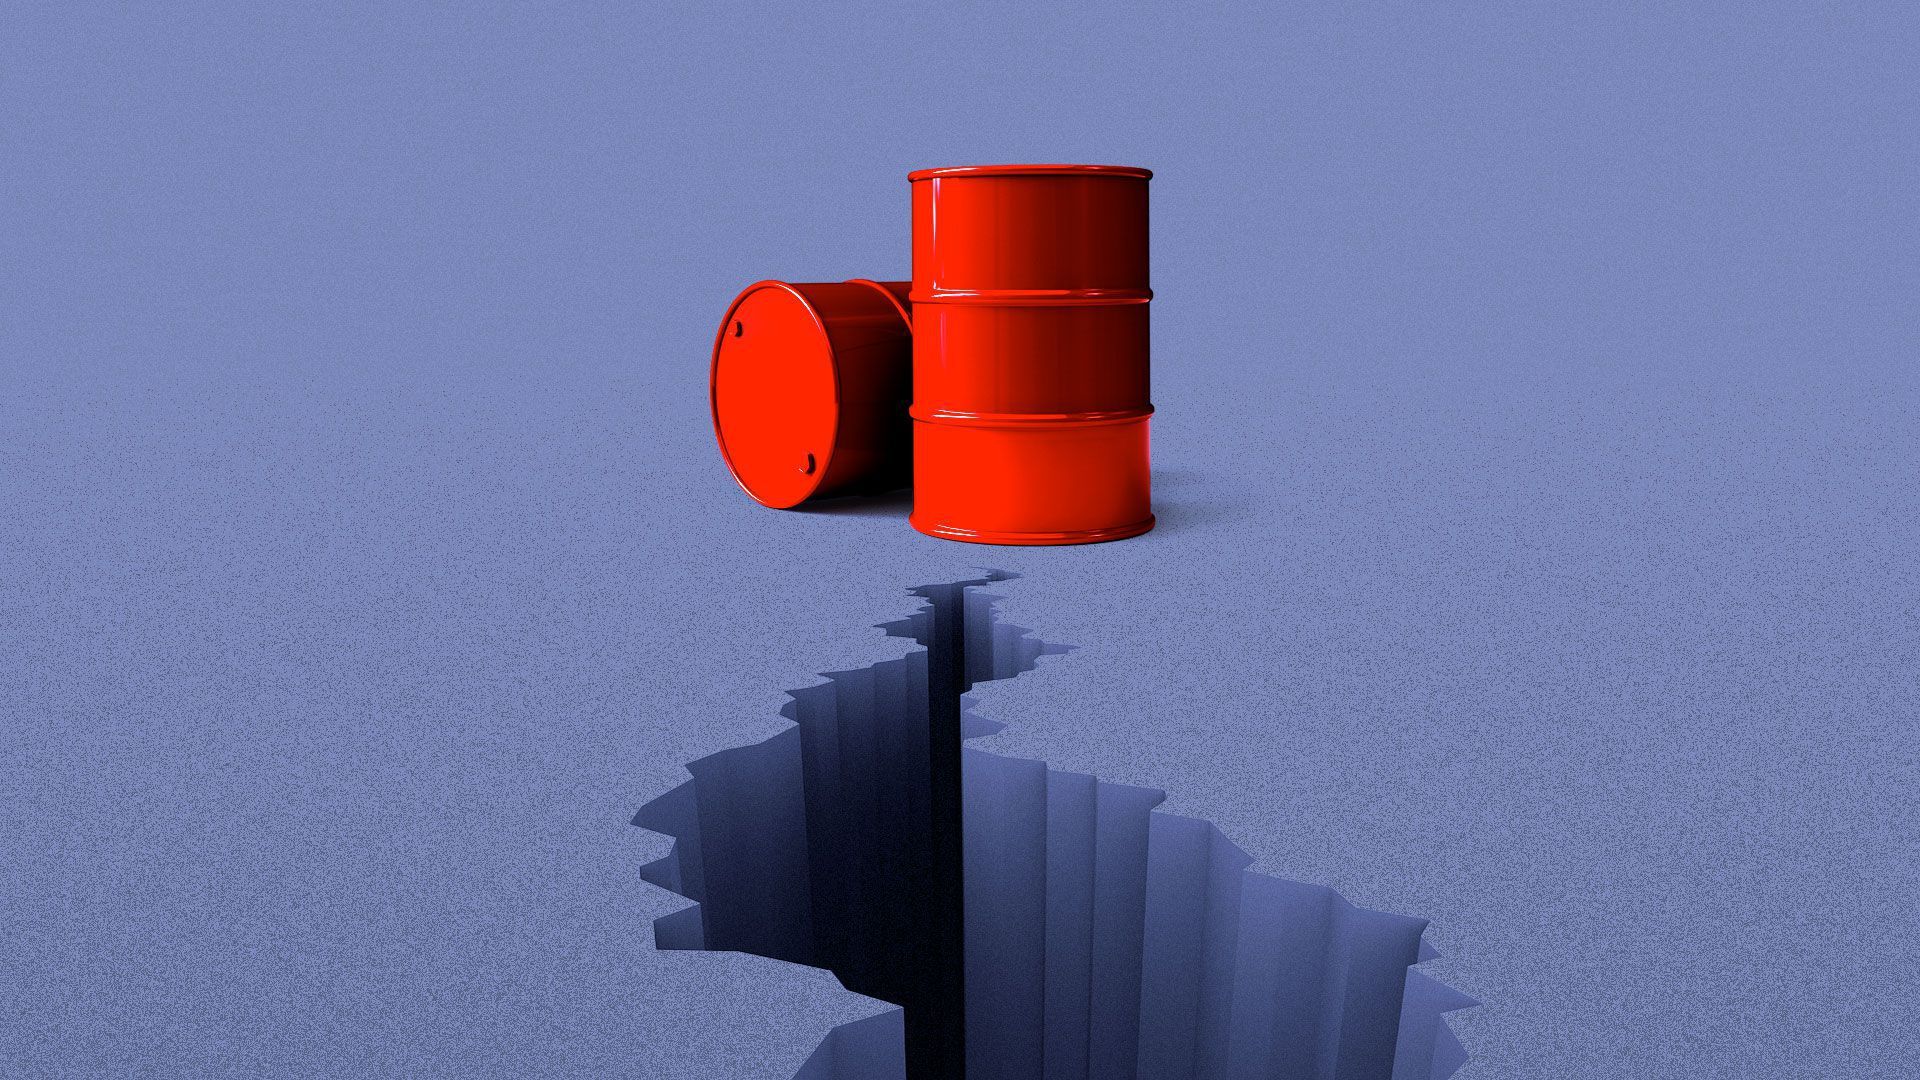 llustration og oil barrels over a crack